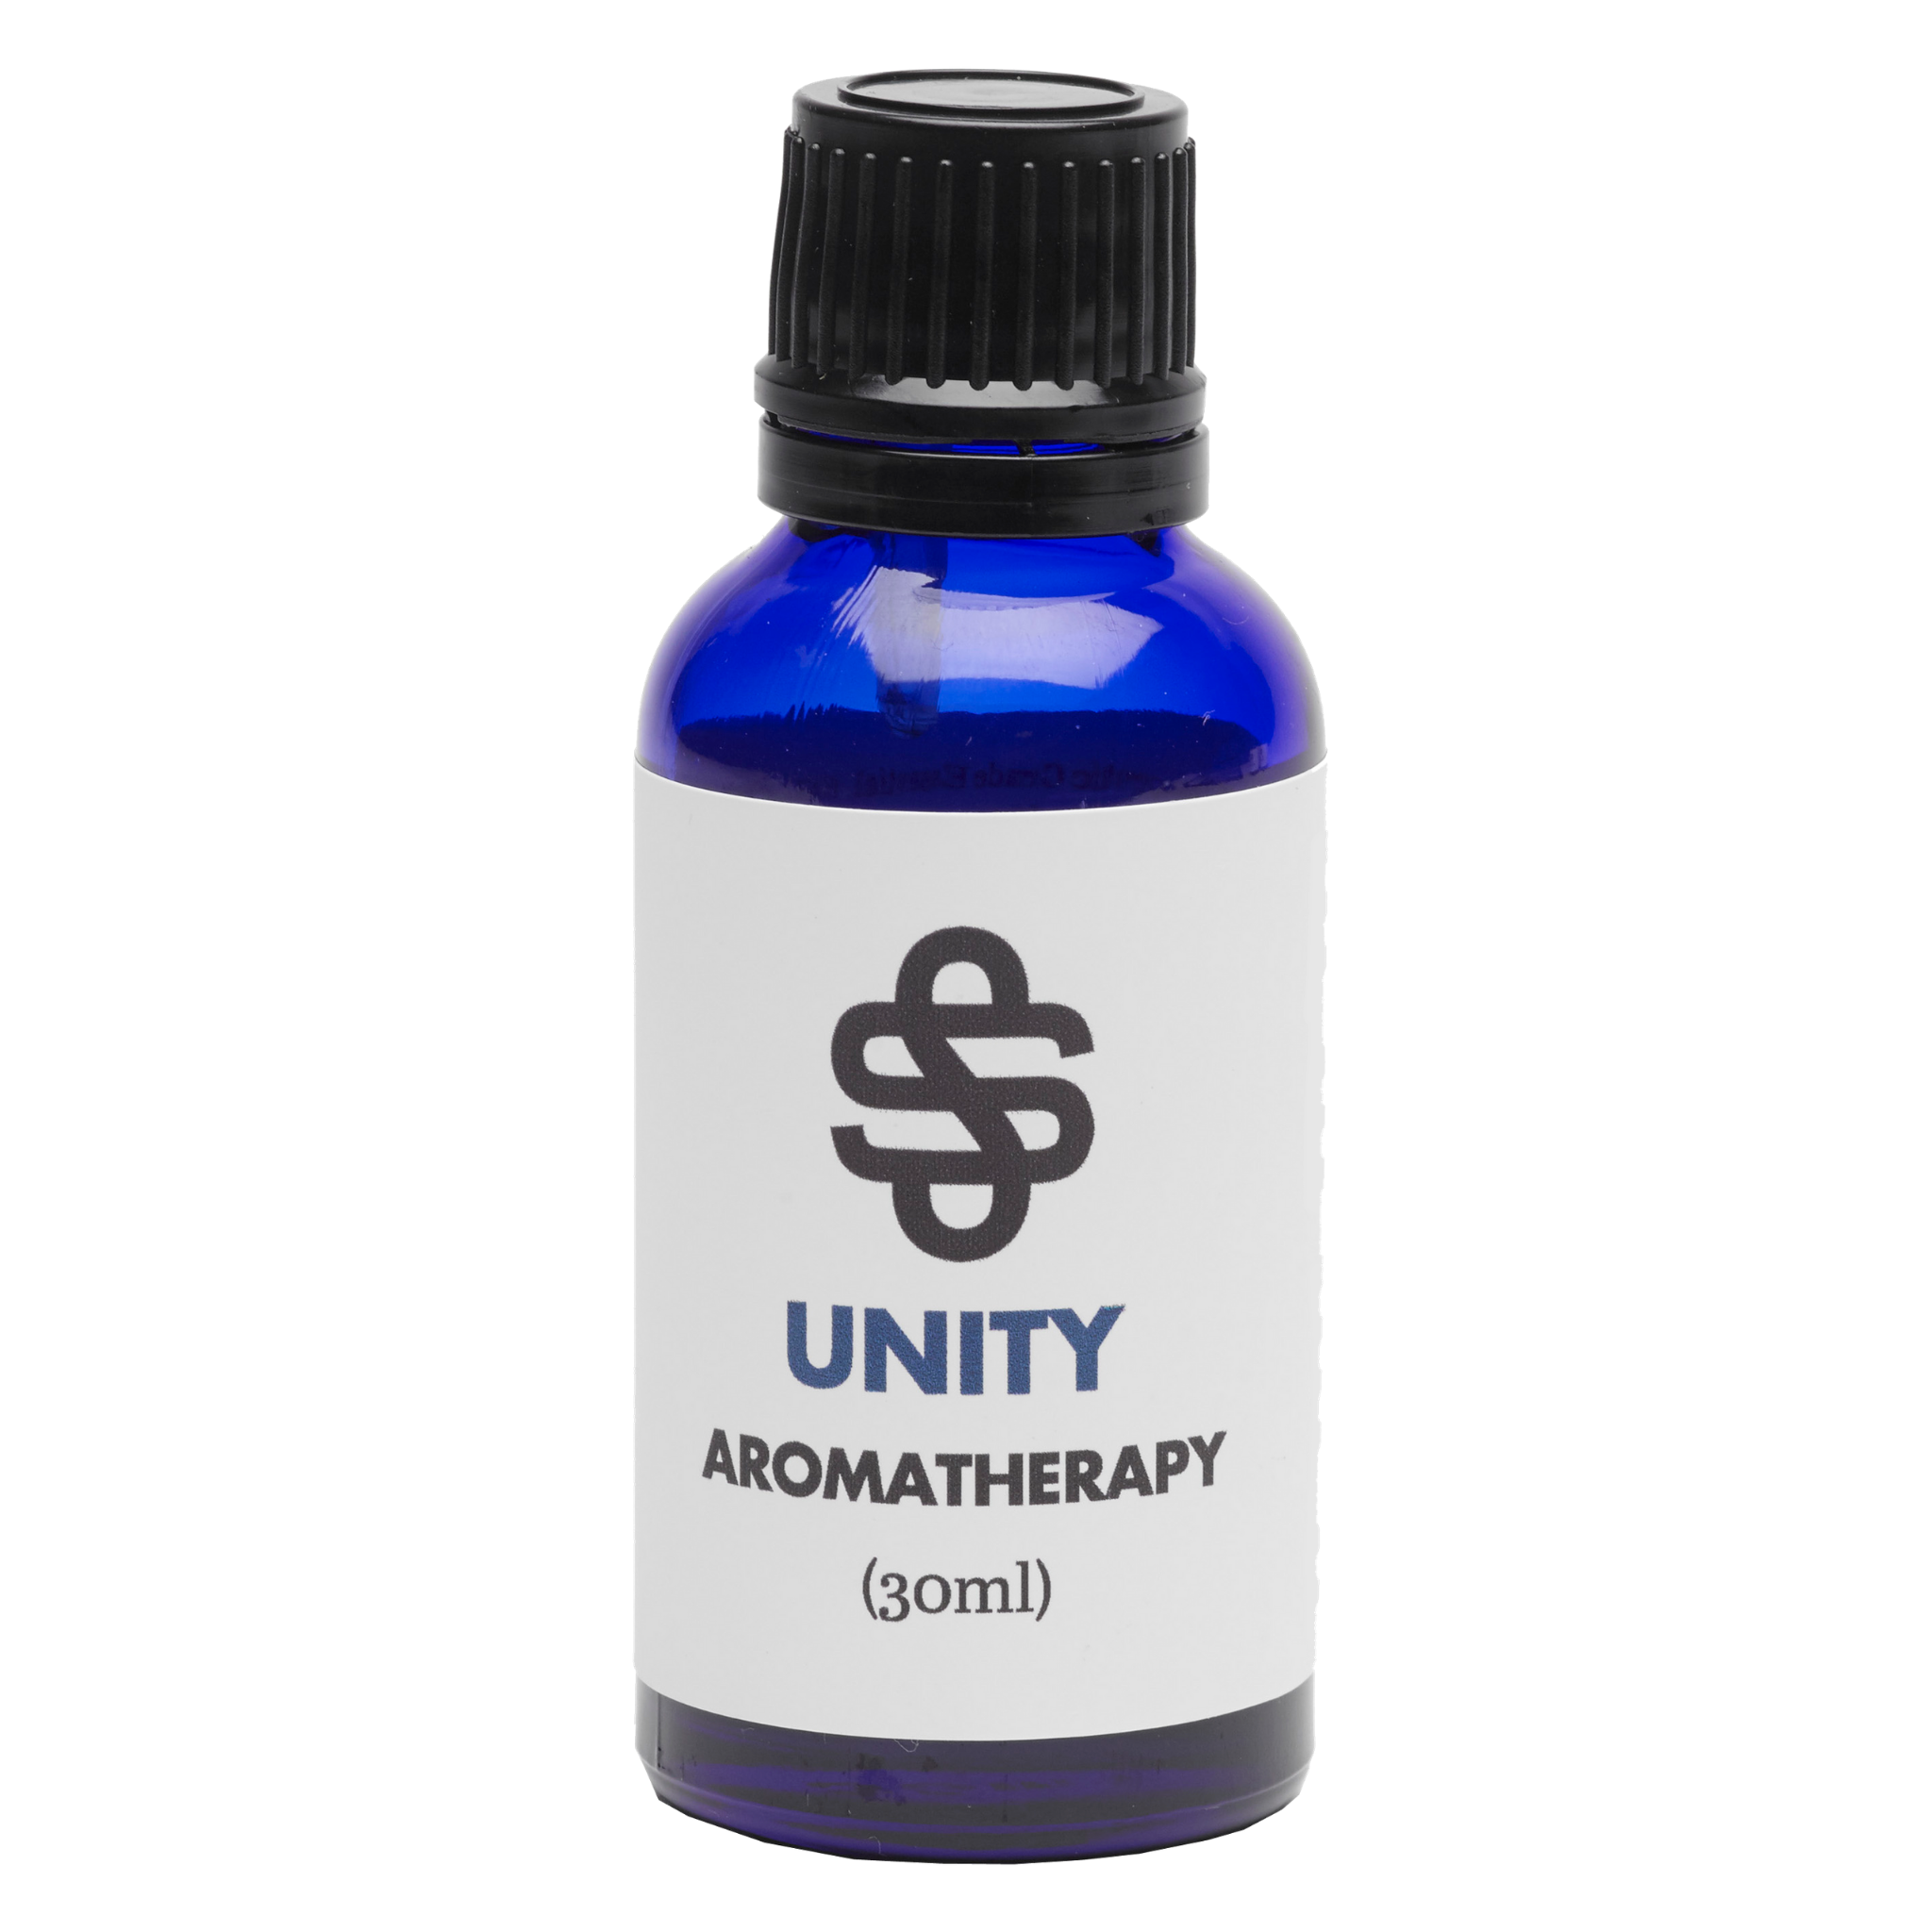 Unity Aromatherapy Blend